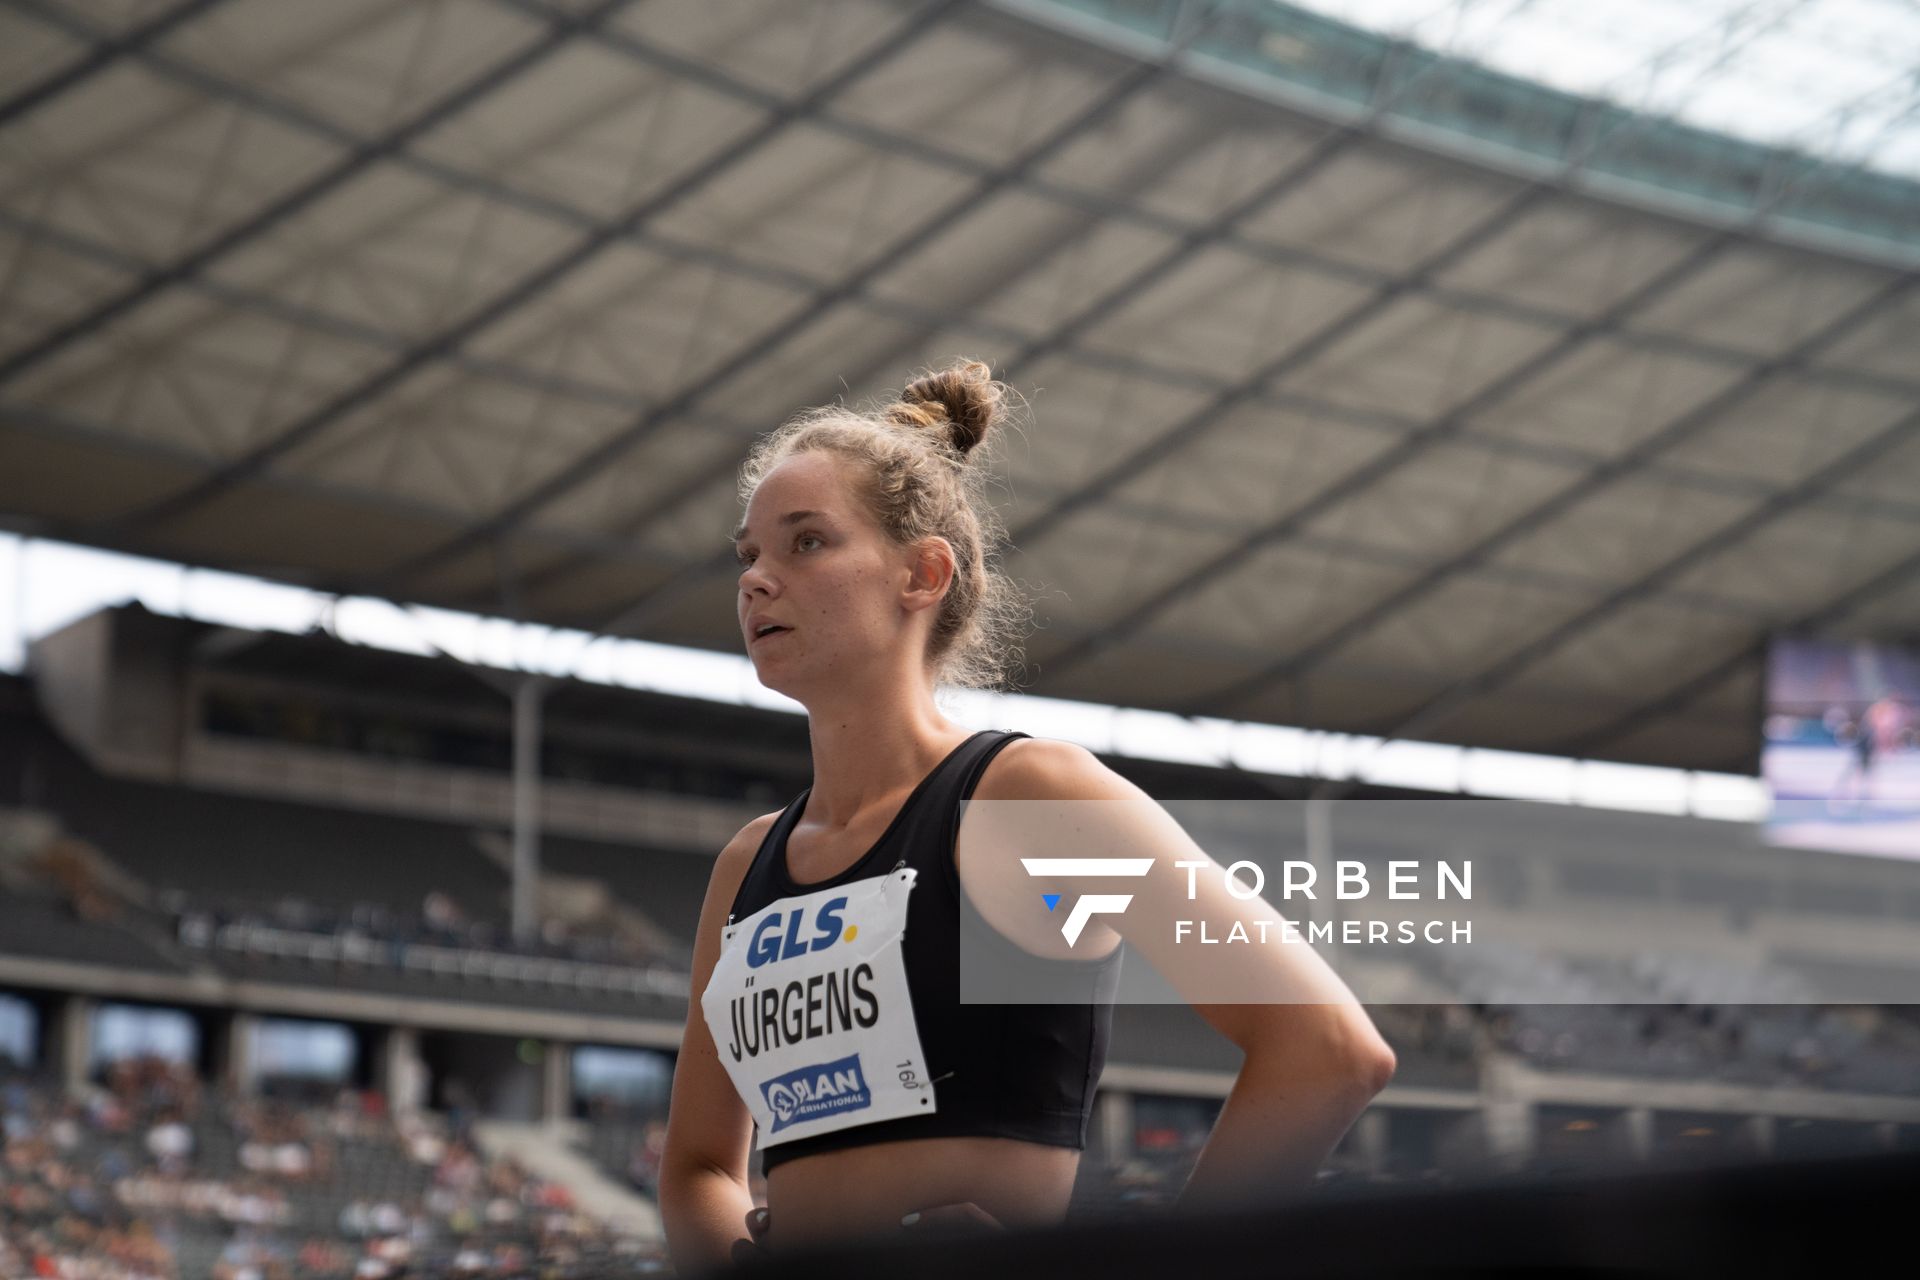 Lavinja Juergens (LG Stadtwerke München) waehrend der deutschen Leichtathletik-Meisterschaften im Olympiastadion am 25.06.2022 in Berlin